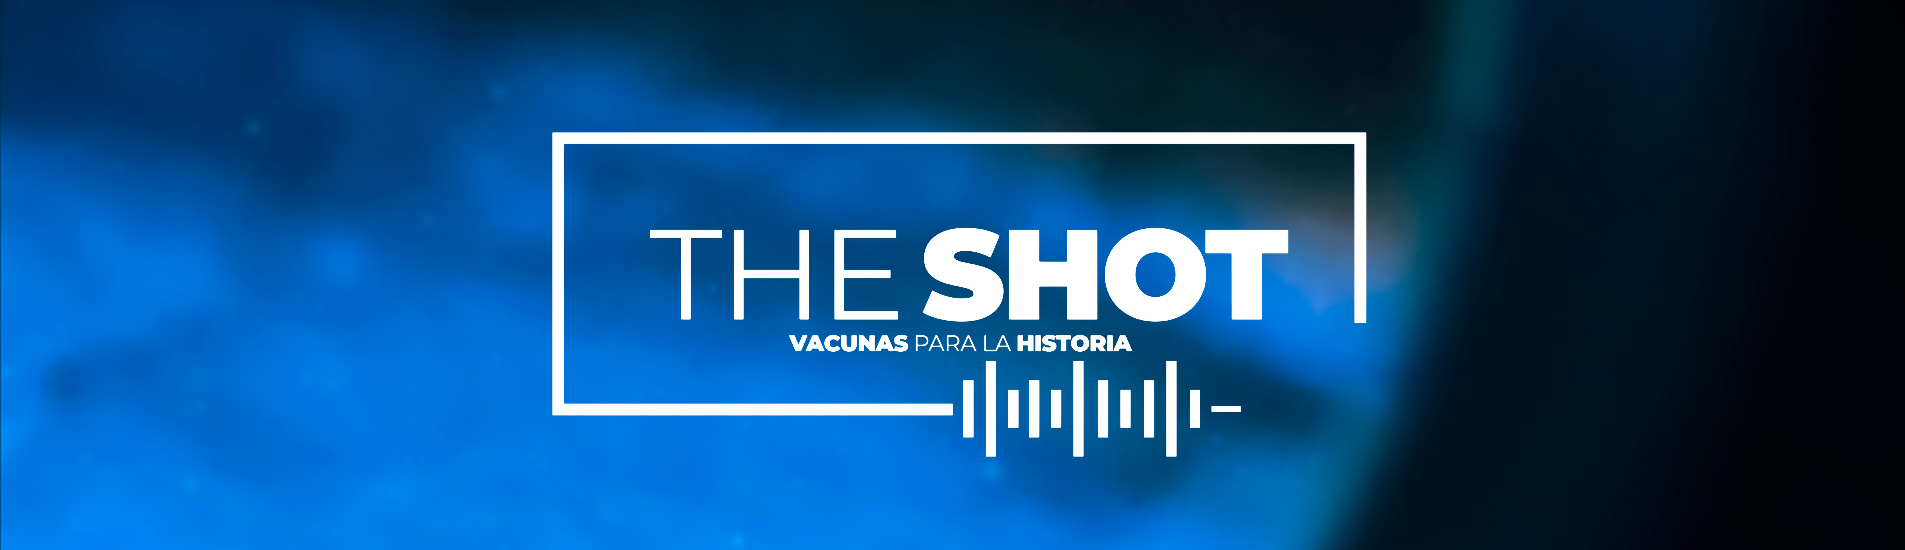 The Shot, vacunas para la historia